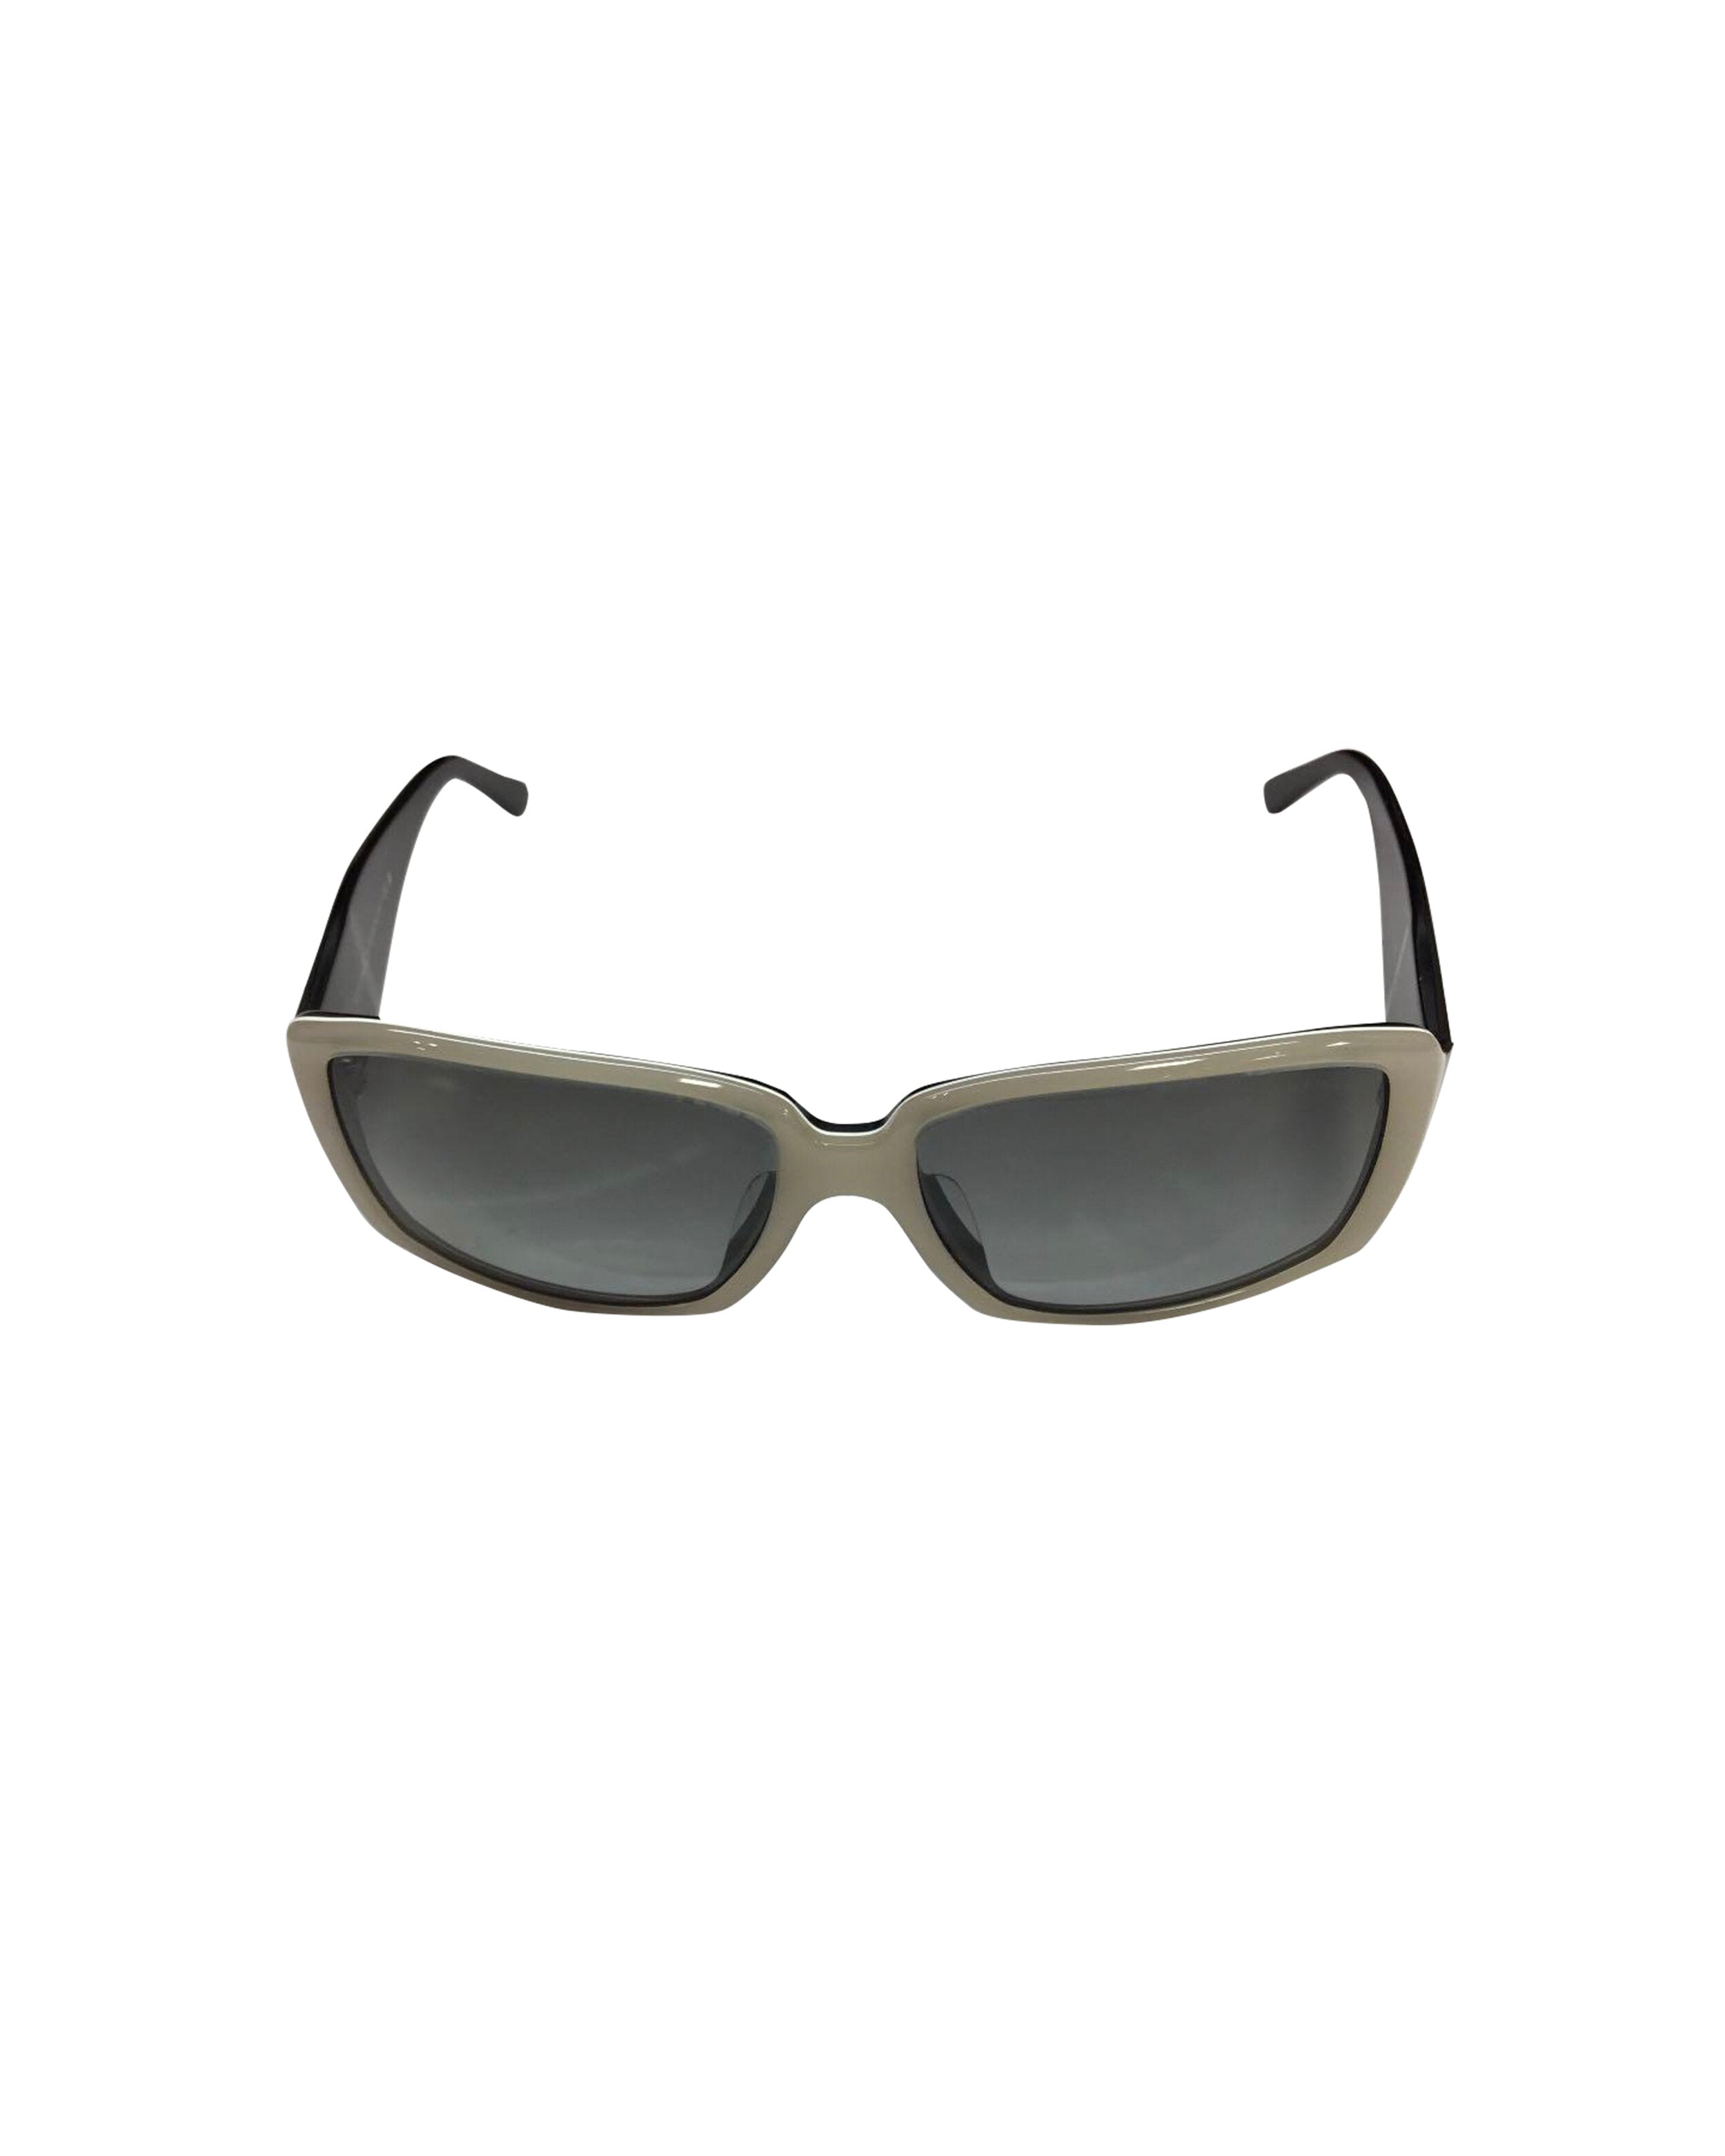 Chanel Silver Visor Sunglasses · INTO